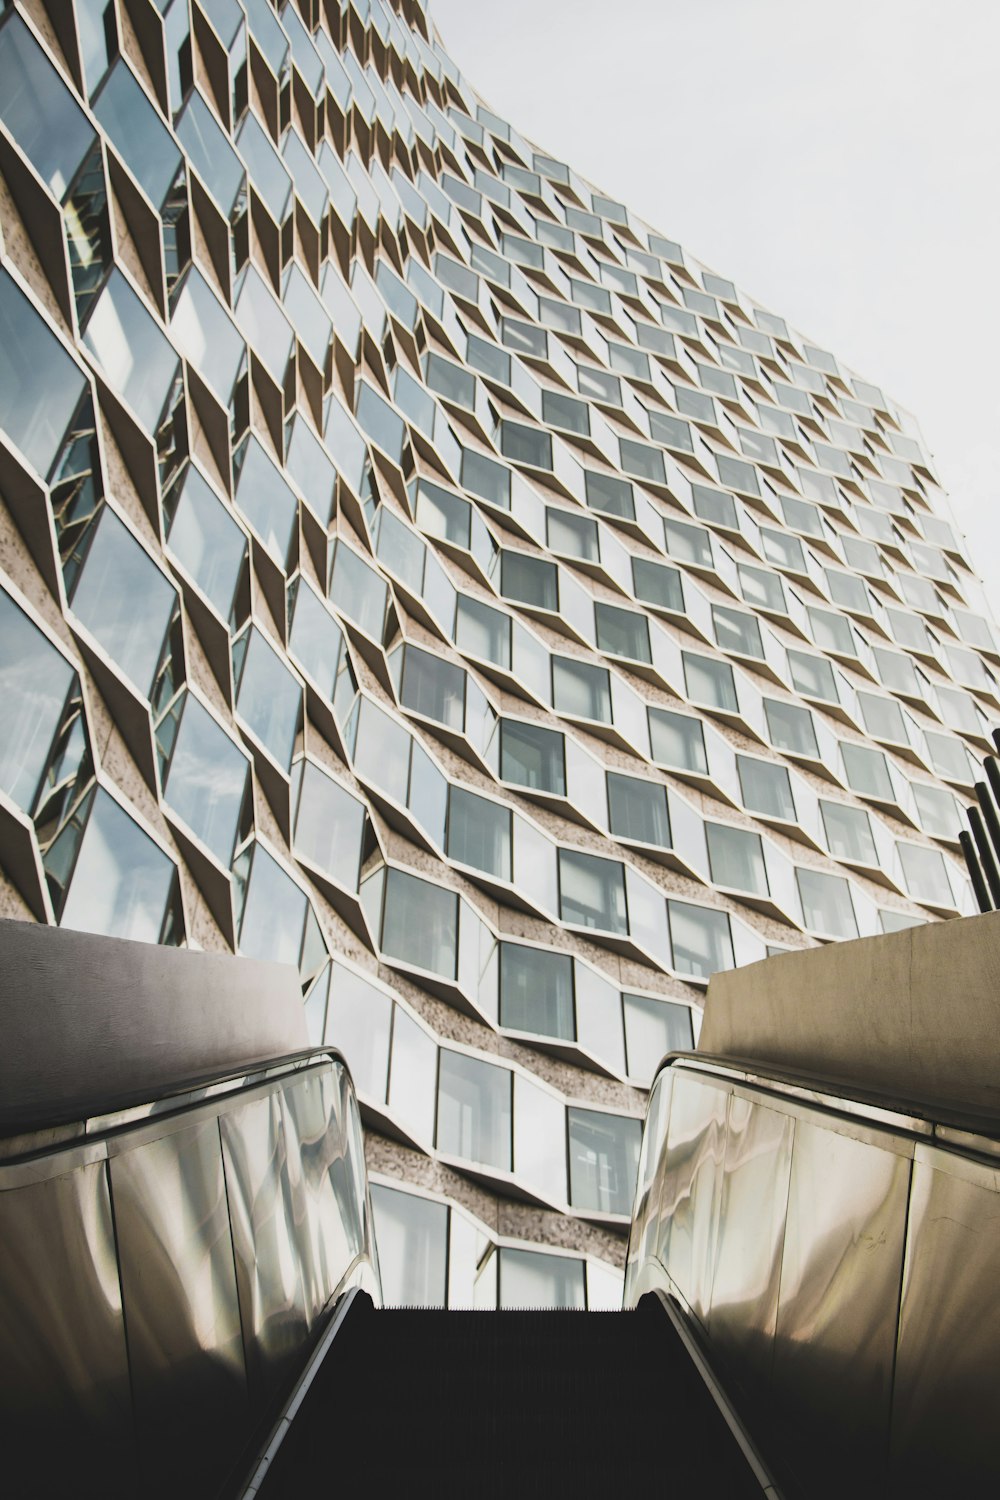 Fotografía de ángulo bajo de un edificio de vidrio de gran altura desde una escalera mecánica